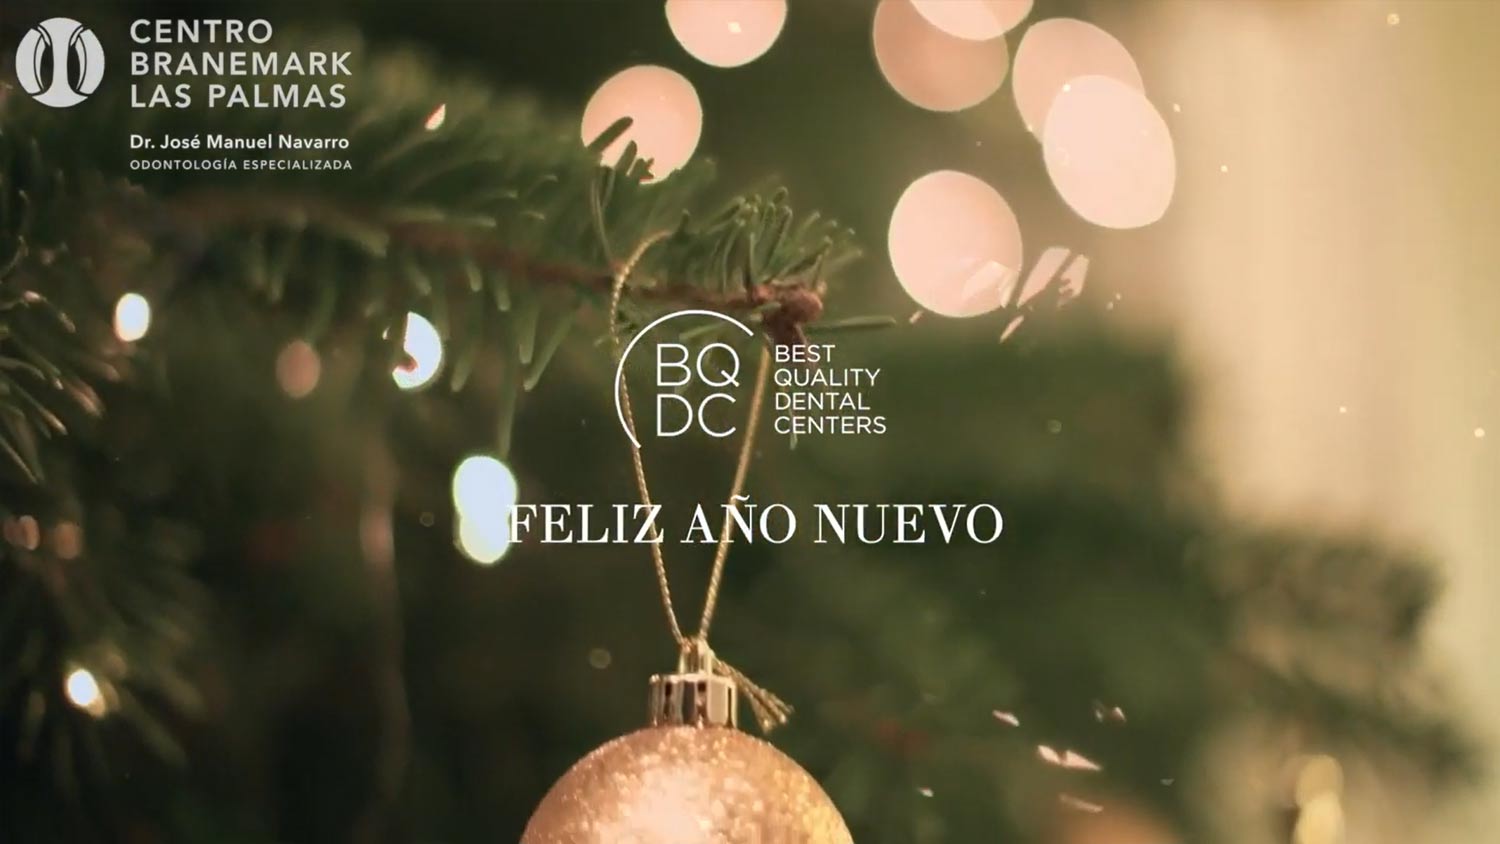 Felicitación de año nuevo - Centro Branemark Las Palmas